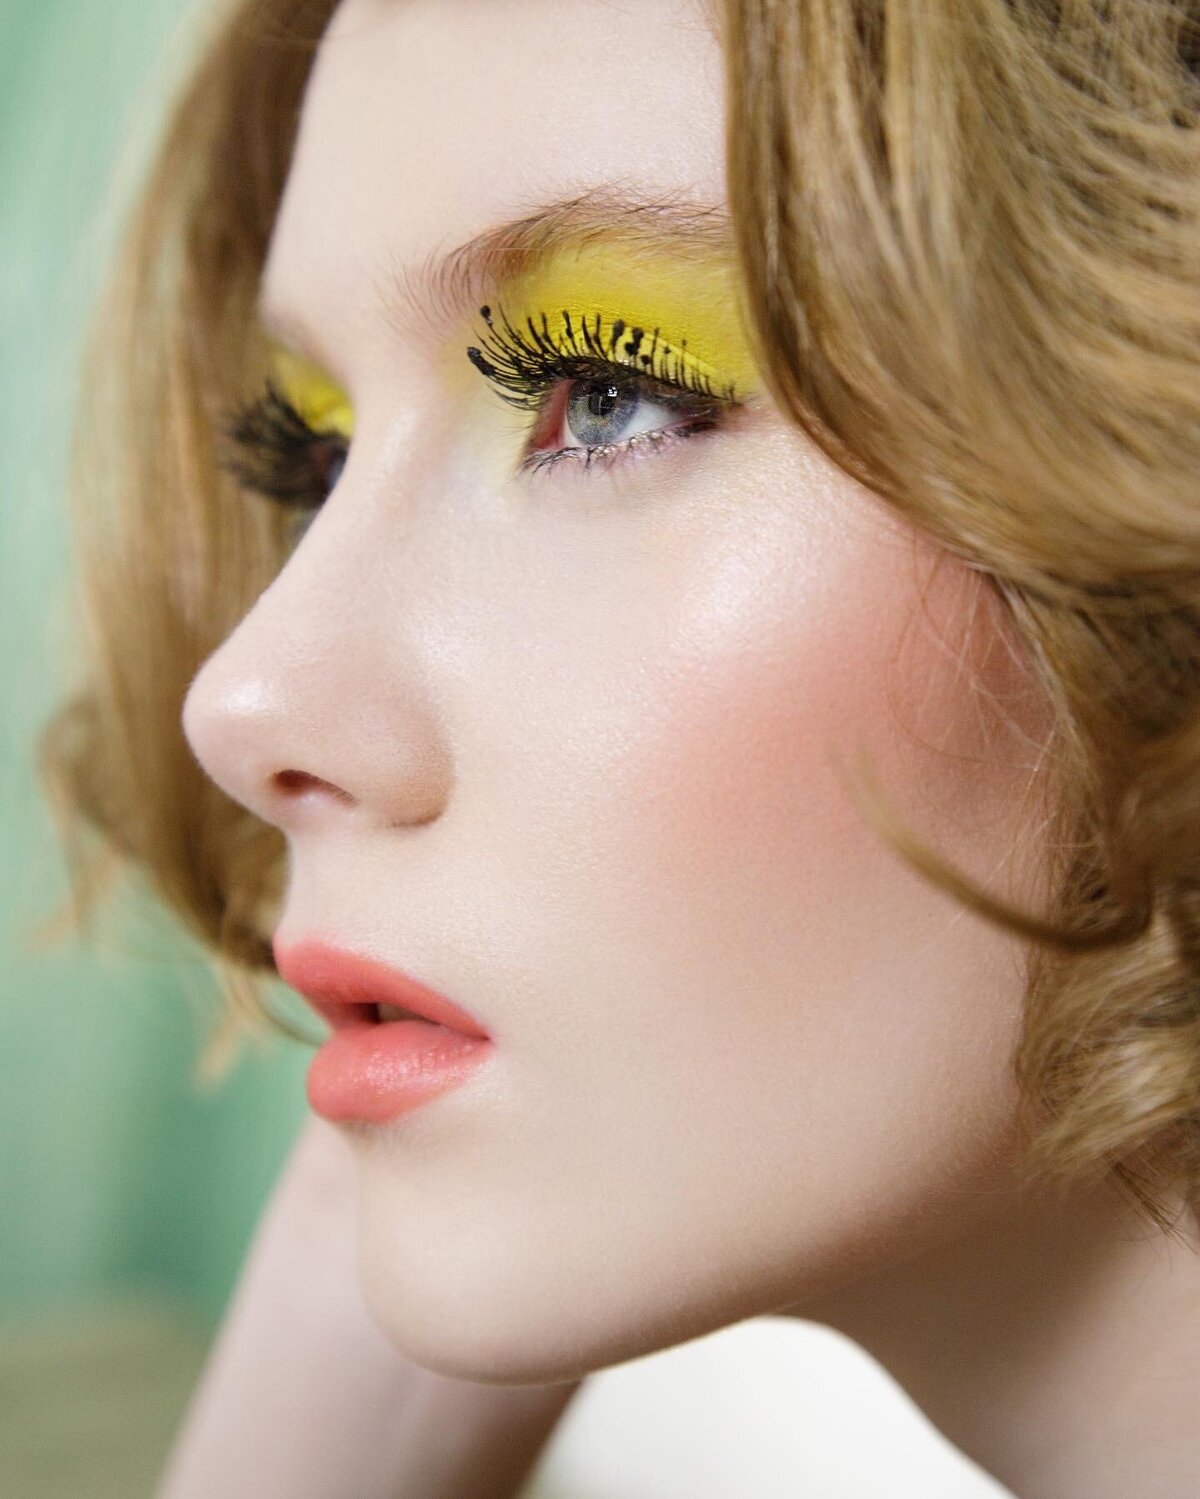 editorial-shoot-woman-wearing-yellow-eye-makeup-peach-lips